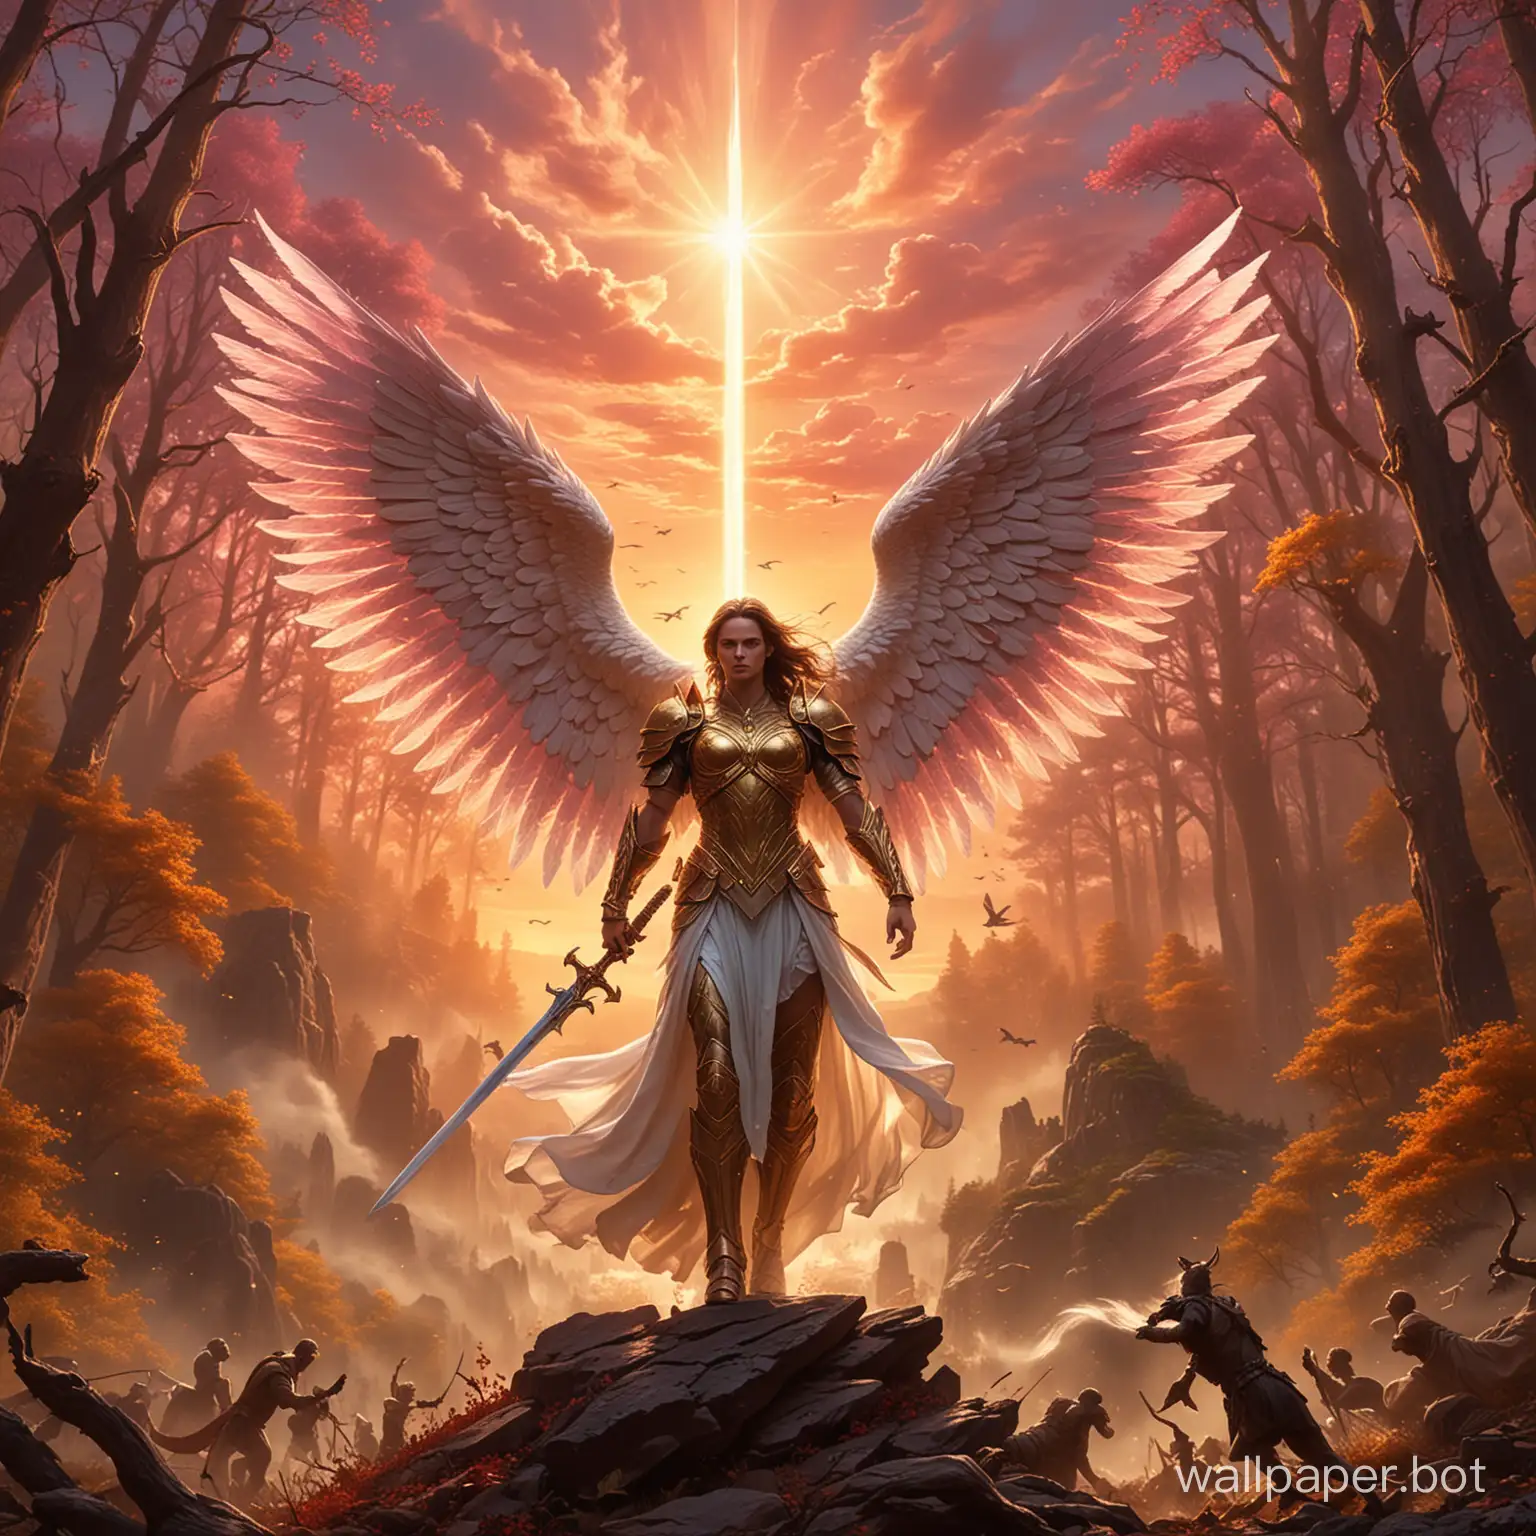 Epic-Angel-vs-Demon-Battle-in-Colorful-Sunset-Landscape